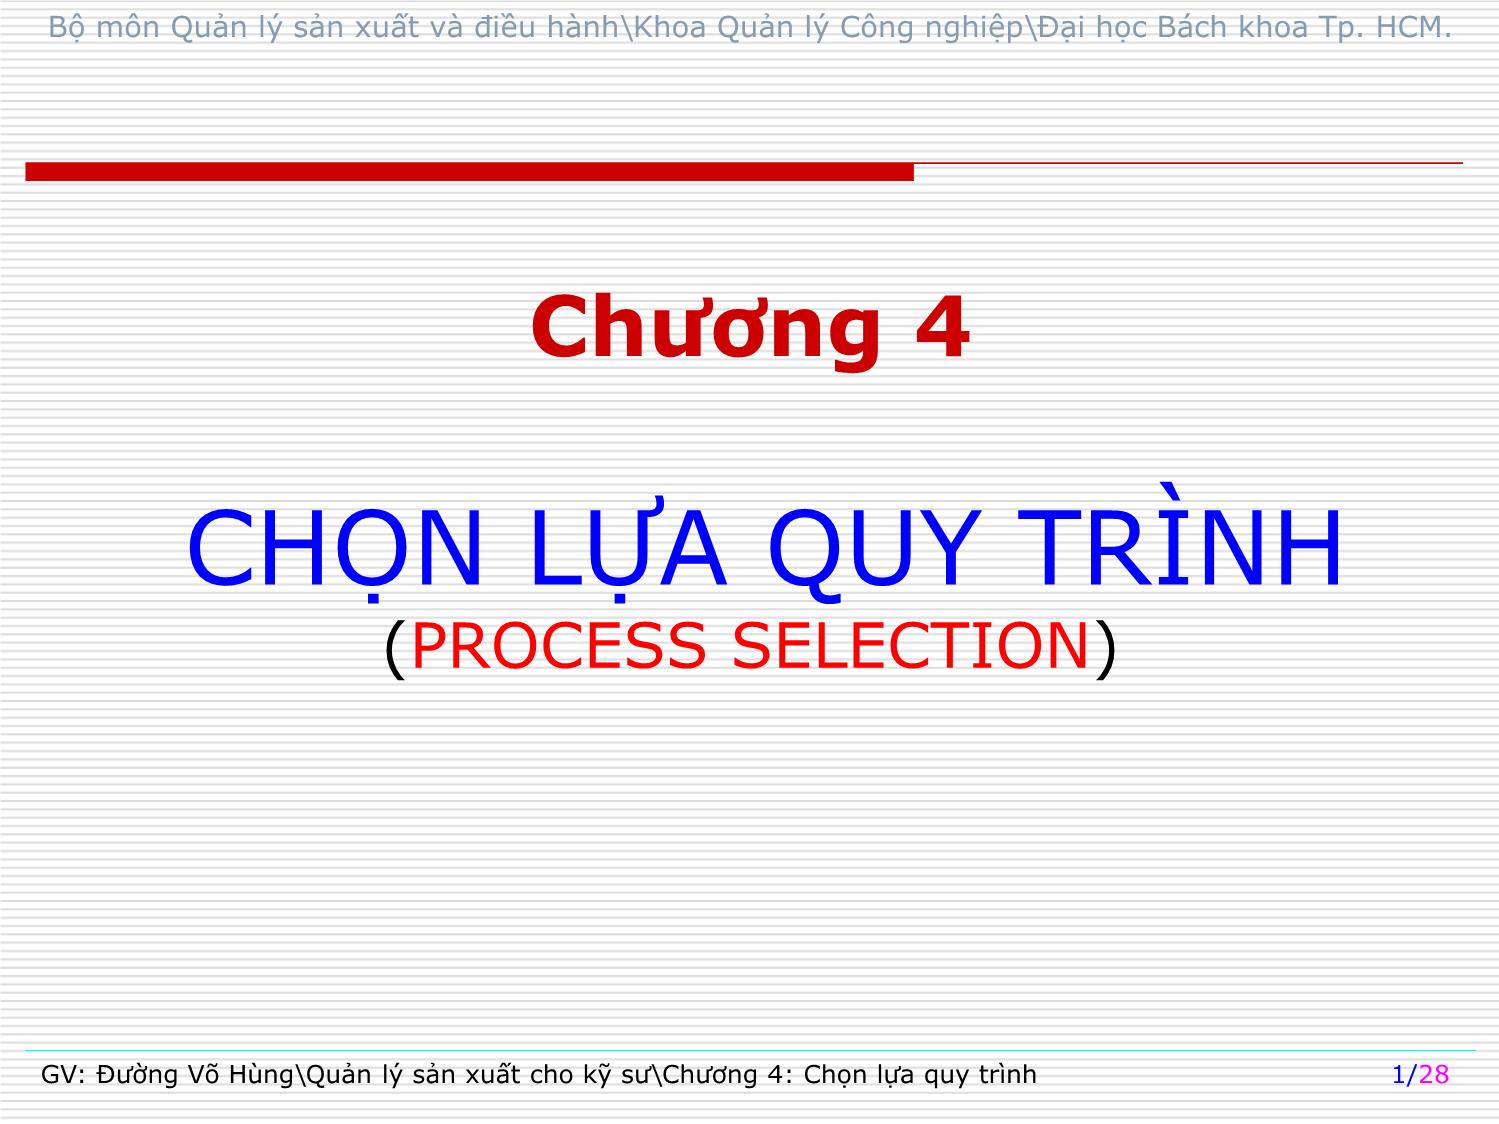 Bài giảng Quản lý sản xuất cho kỹ sư - Chương 4: Chọn lựa quy trình (Process selection) - Đường Võ Hùng trang 1